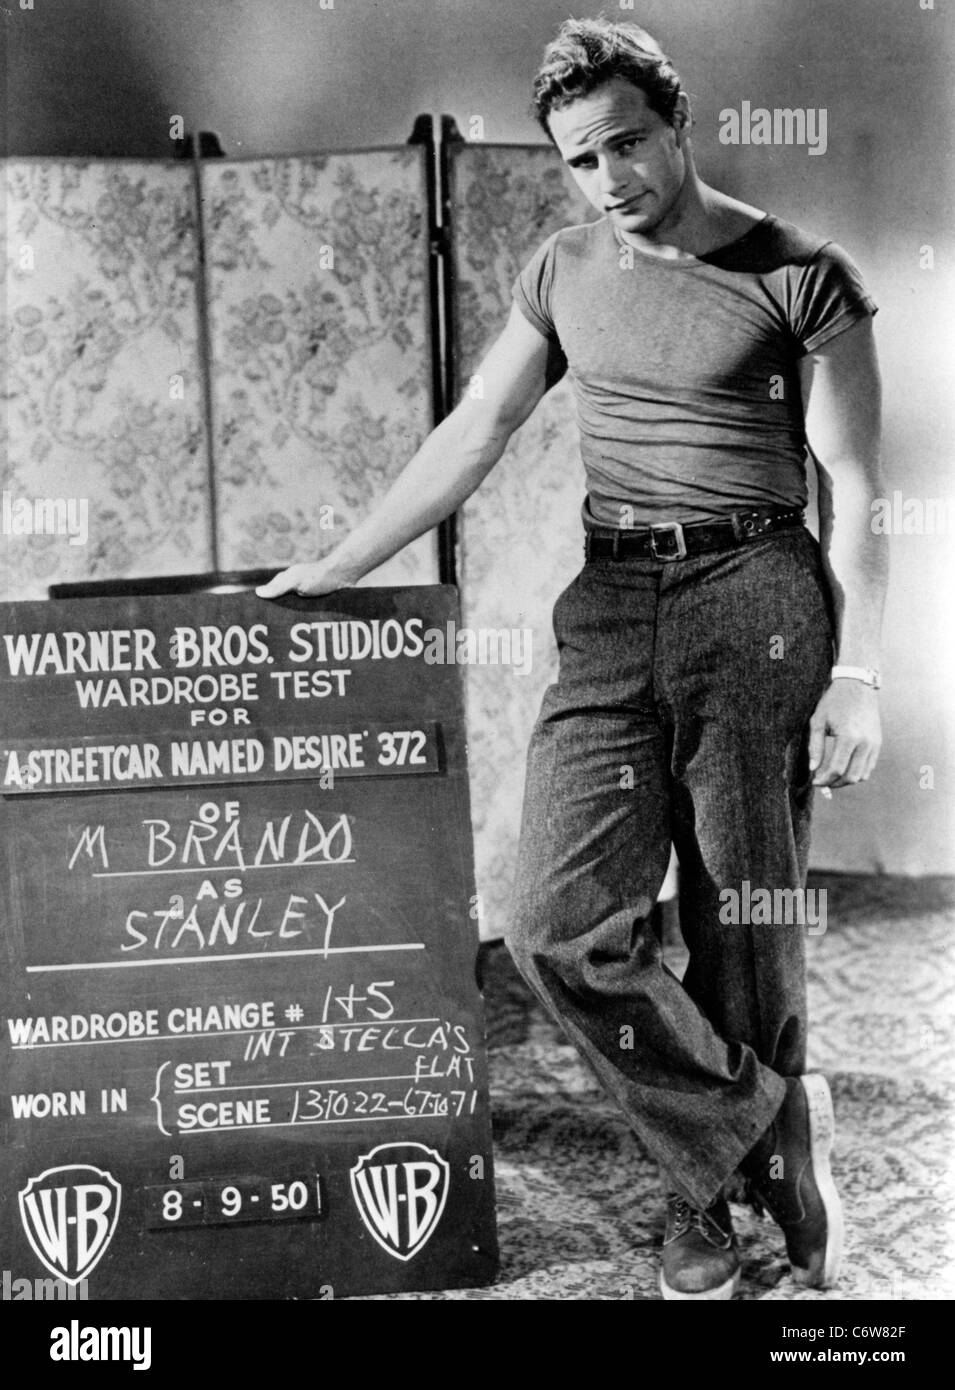 MARLON BRANDO U.S. Filmschauspieler macht einen Kleiderschrank Test für A Streetcar Named Desire 1950 Stockfoto